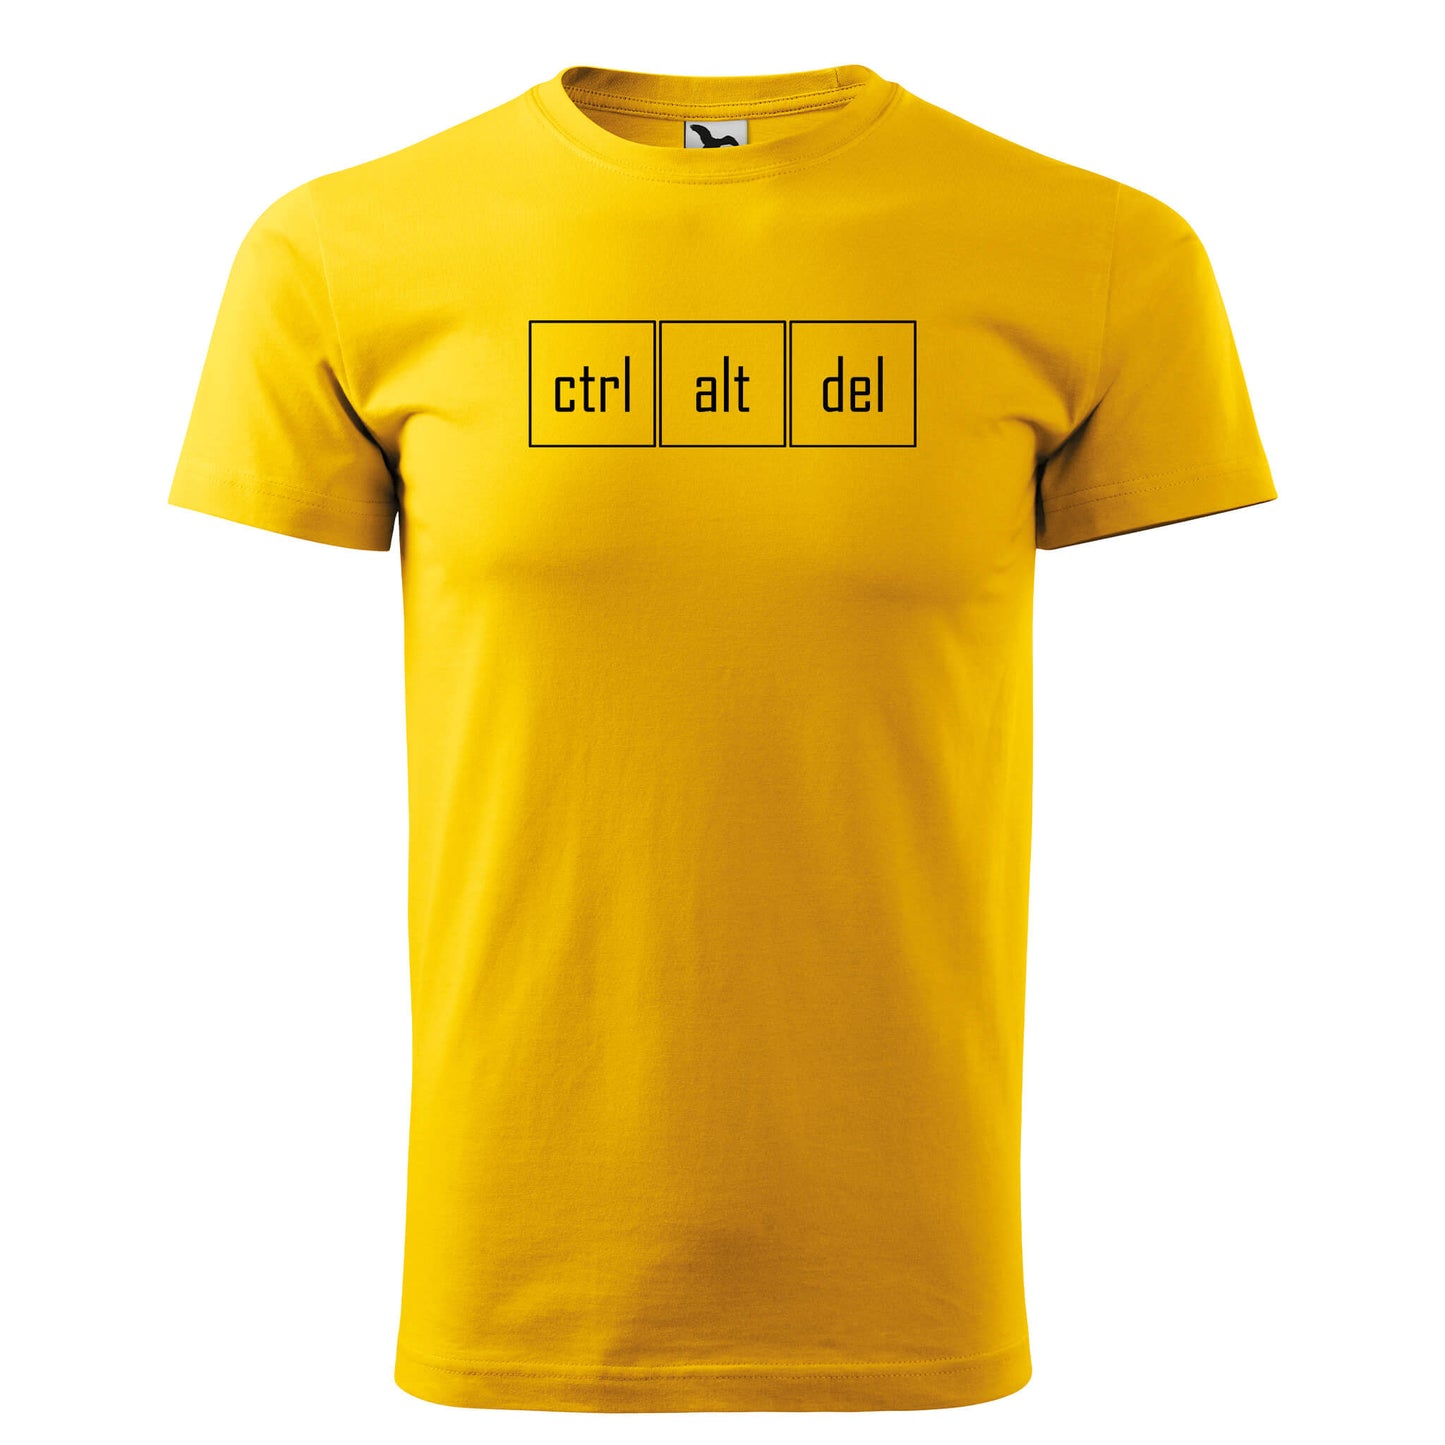 T-shirt - ctrl alt del - rvdesignprint